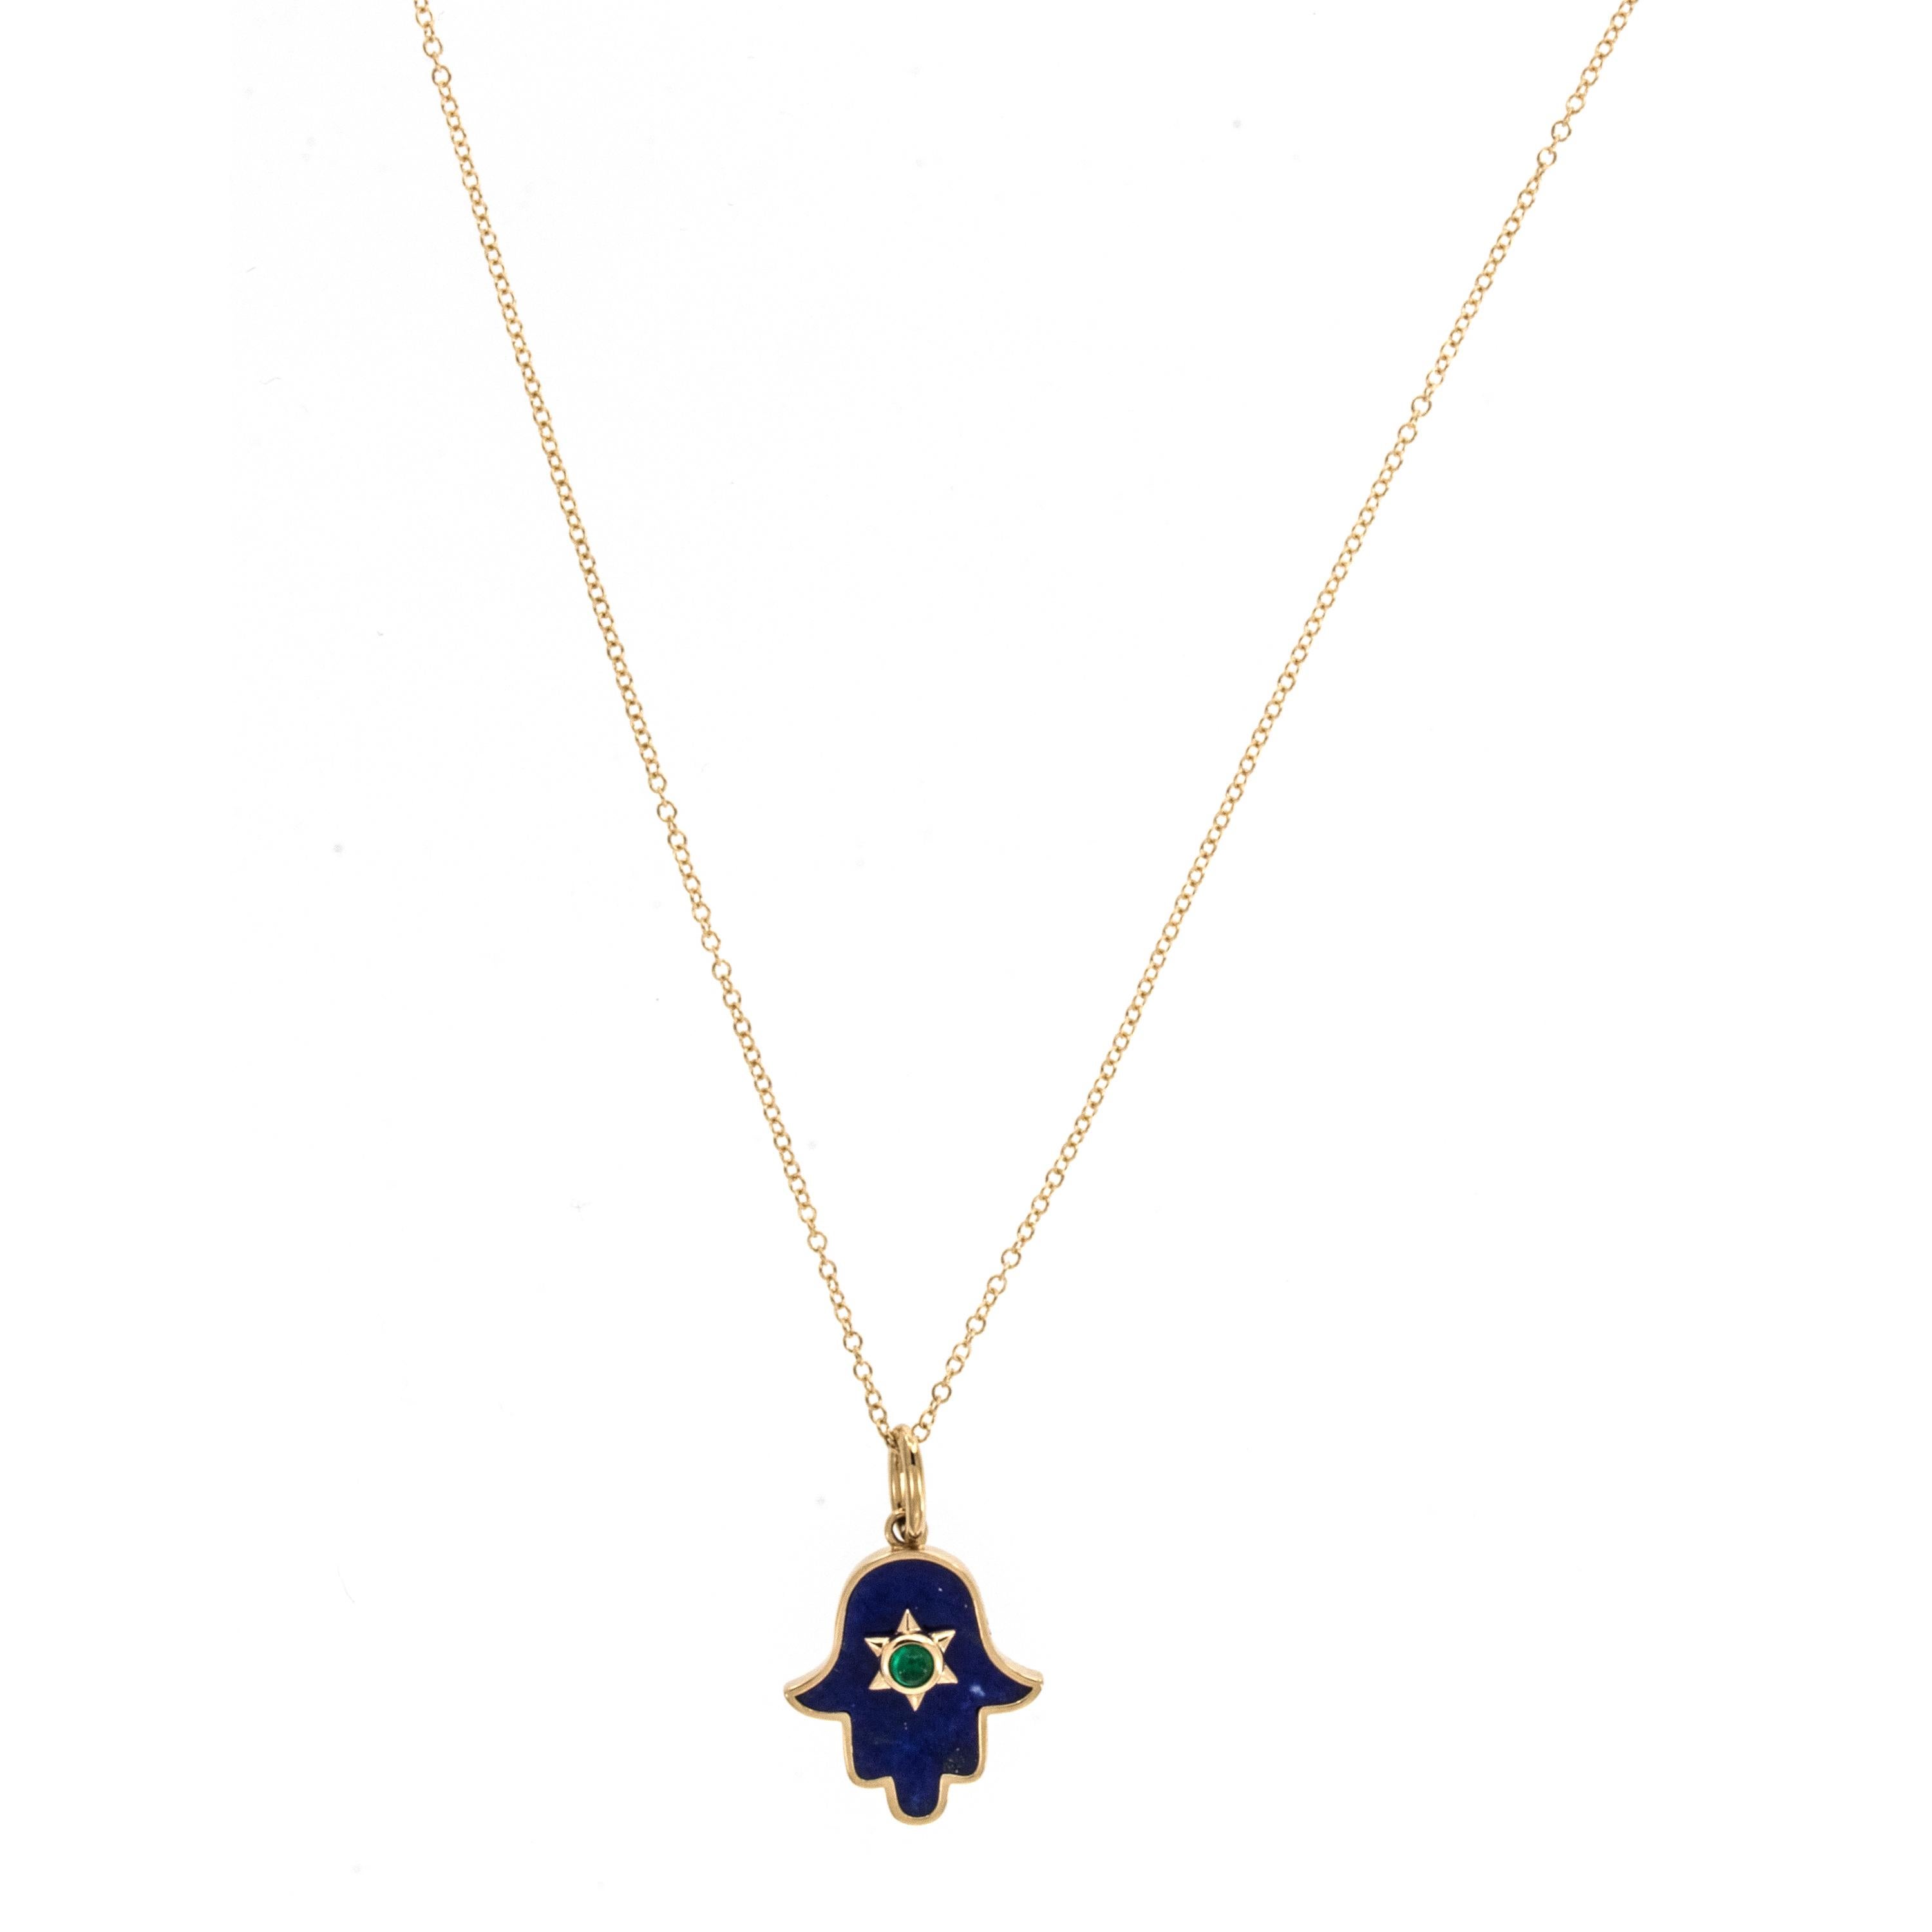 Fabriqué en or jaune 18 carats avec des lapis-lazuli et des émeraudes, ce collier Hamsa vous protègera du mal. Depuis les Phéniciens, la Hamsa, ou main de Dieu, est un symbole pour les juifs et les musulmans. Hamsa, qui signifie cinq, représente